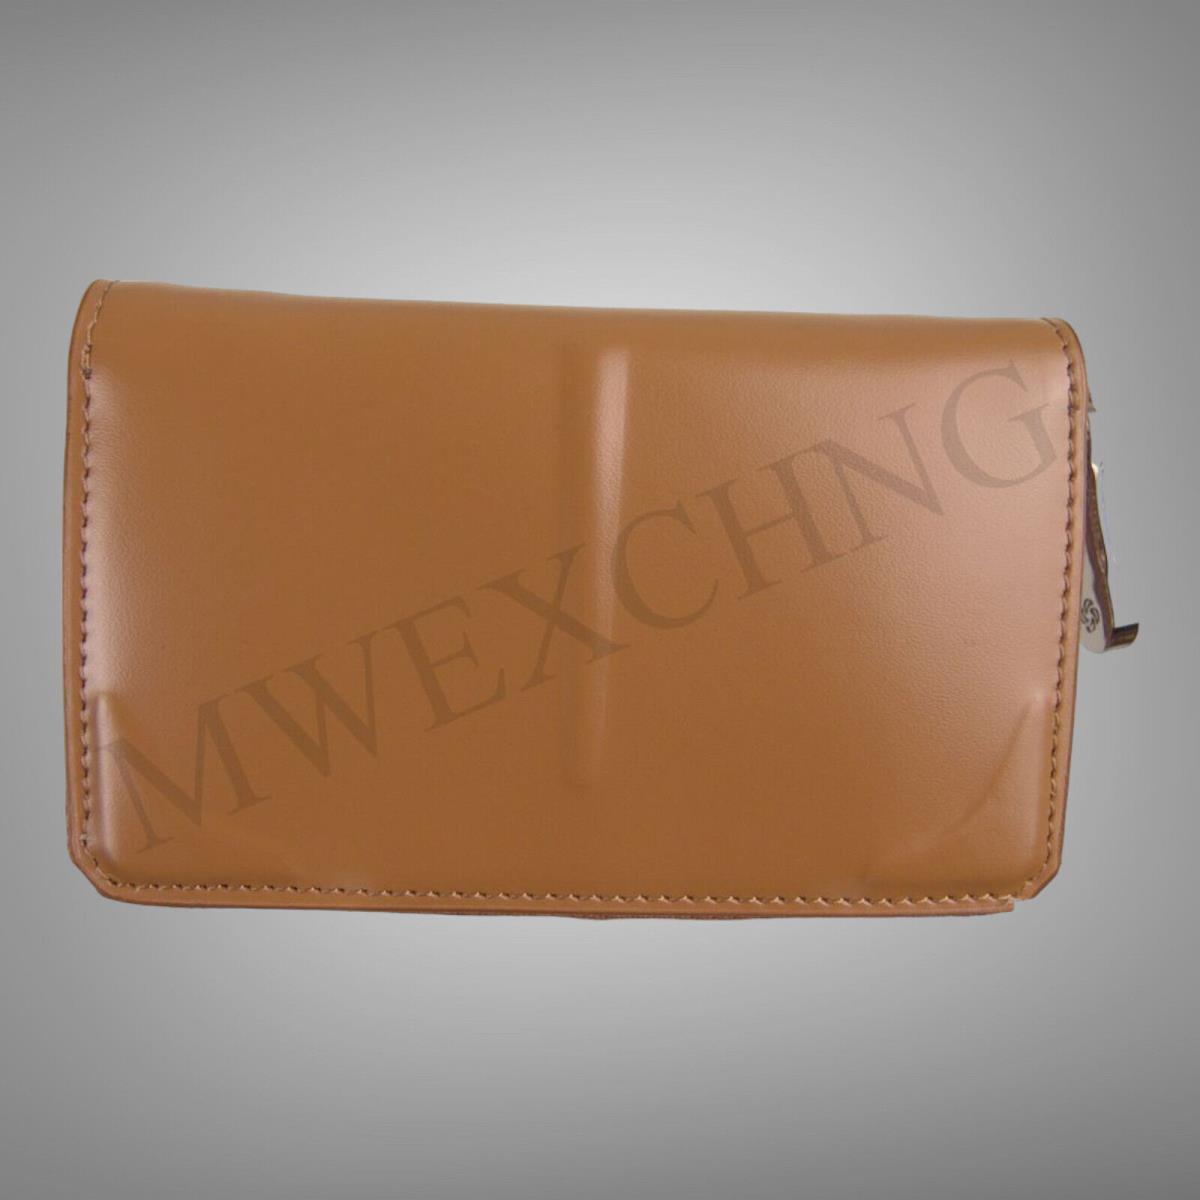 Samsonite Black Label Bayamo Leather Coin Holder Wallet